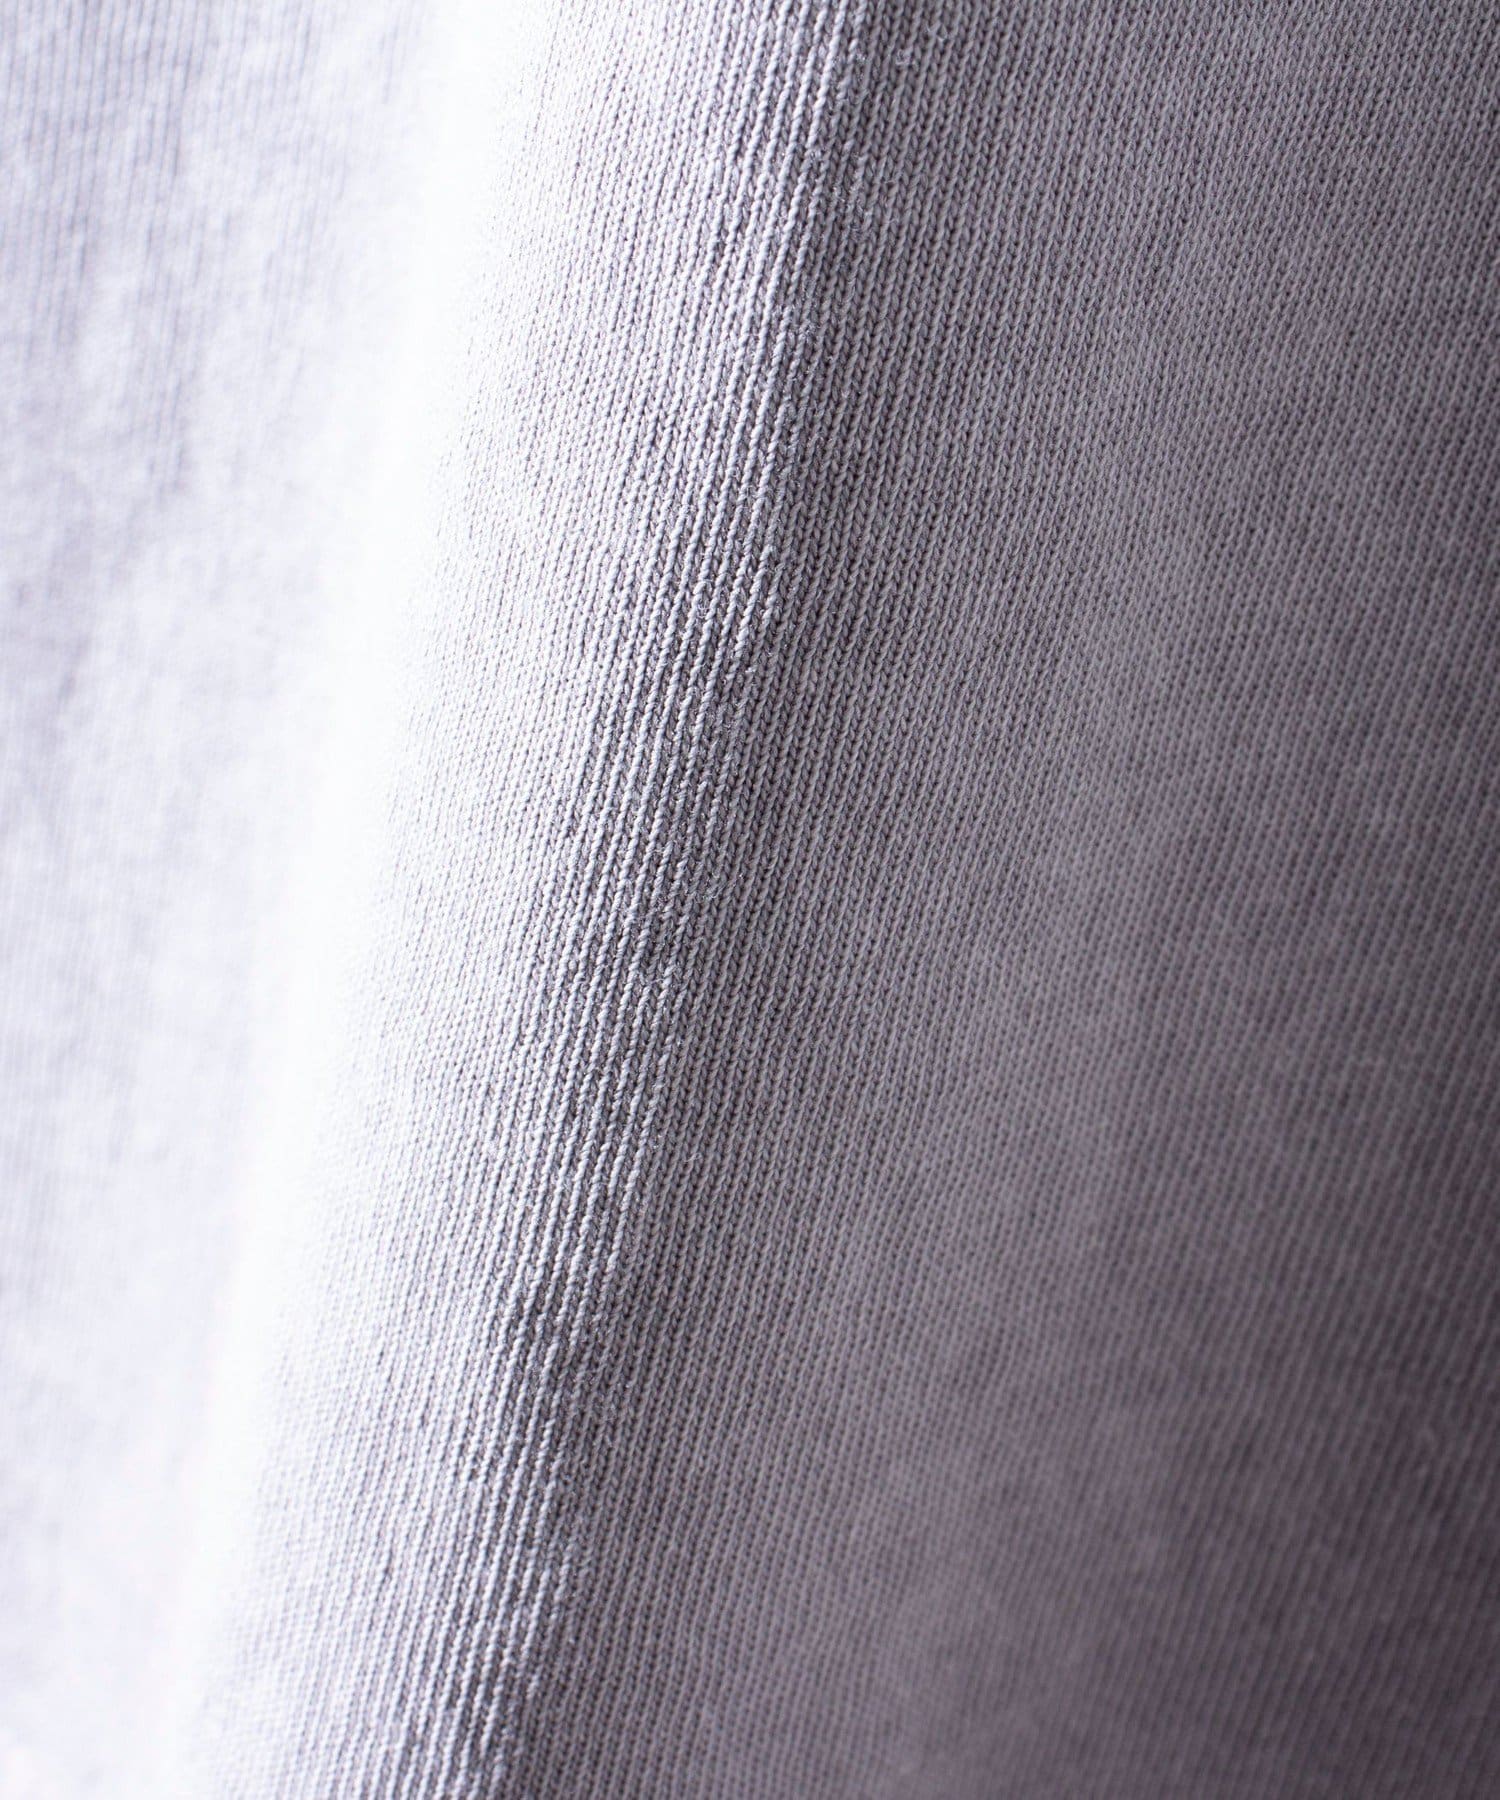 FREDY & GLOSTER(フレディ アンド グロスター) 【GLOSTER】フレンチブルドッグ刺繍 ピグメントTシャツ